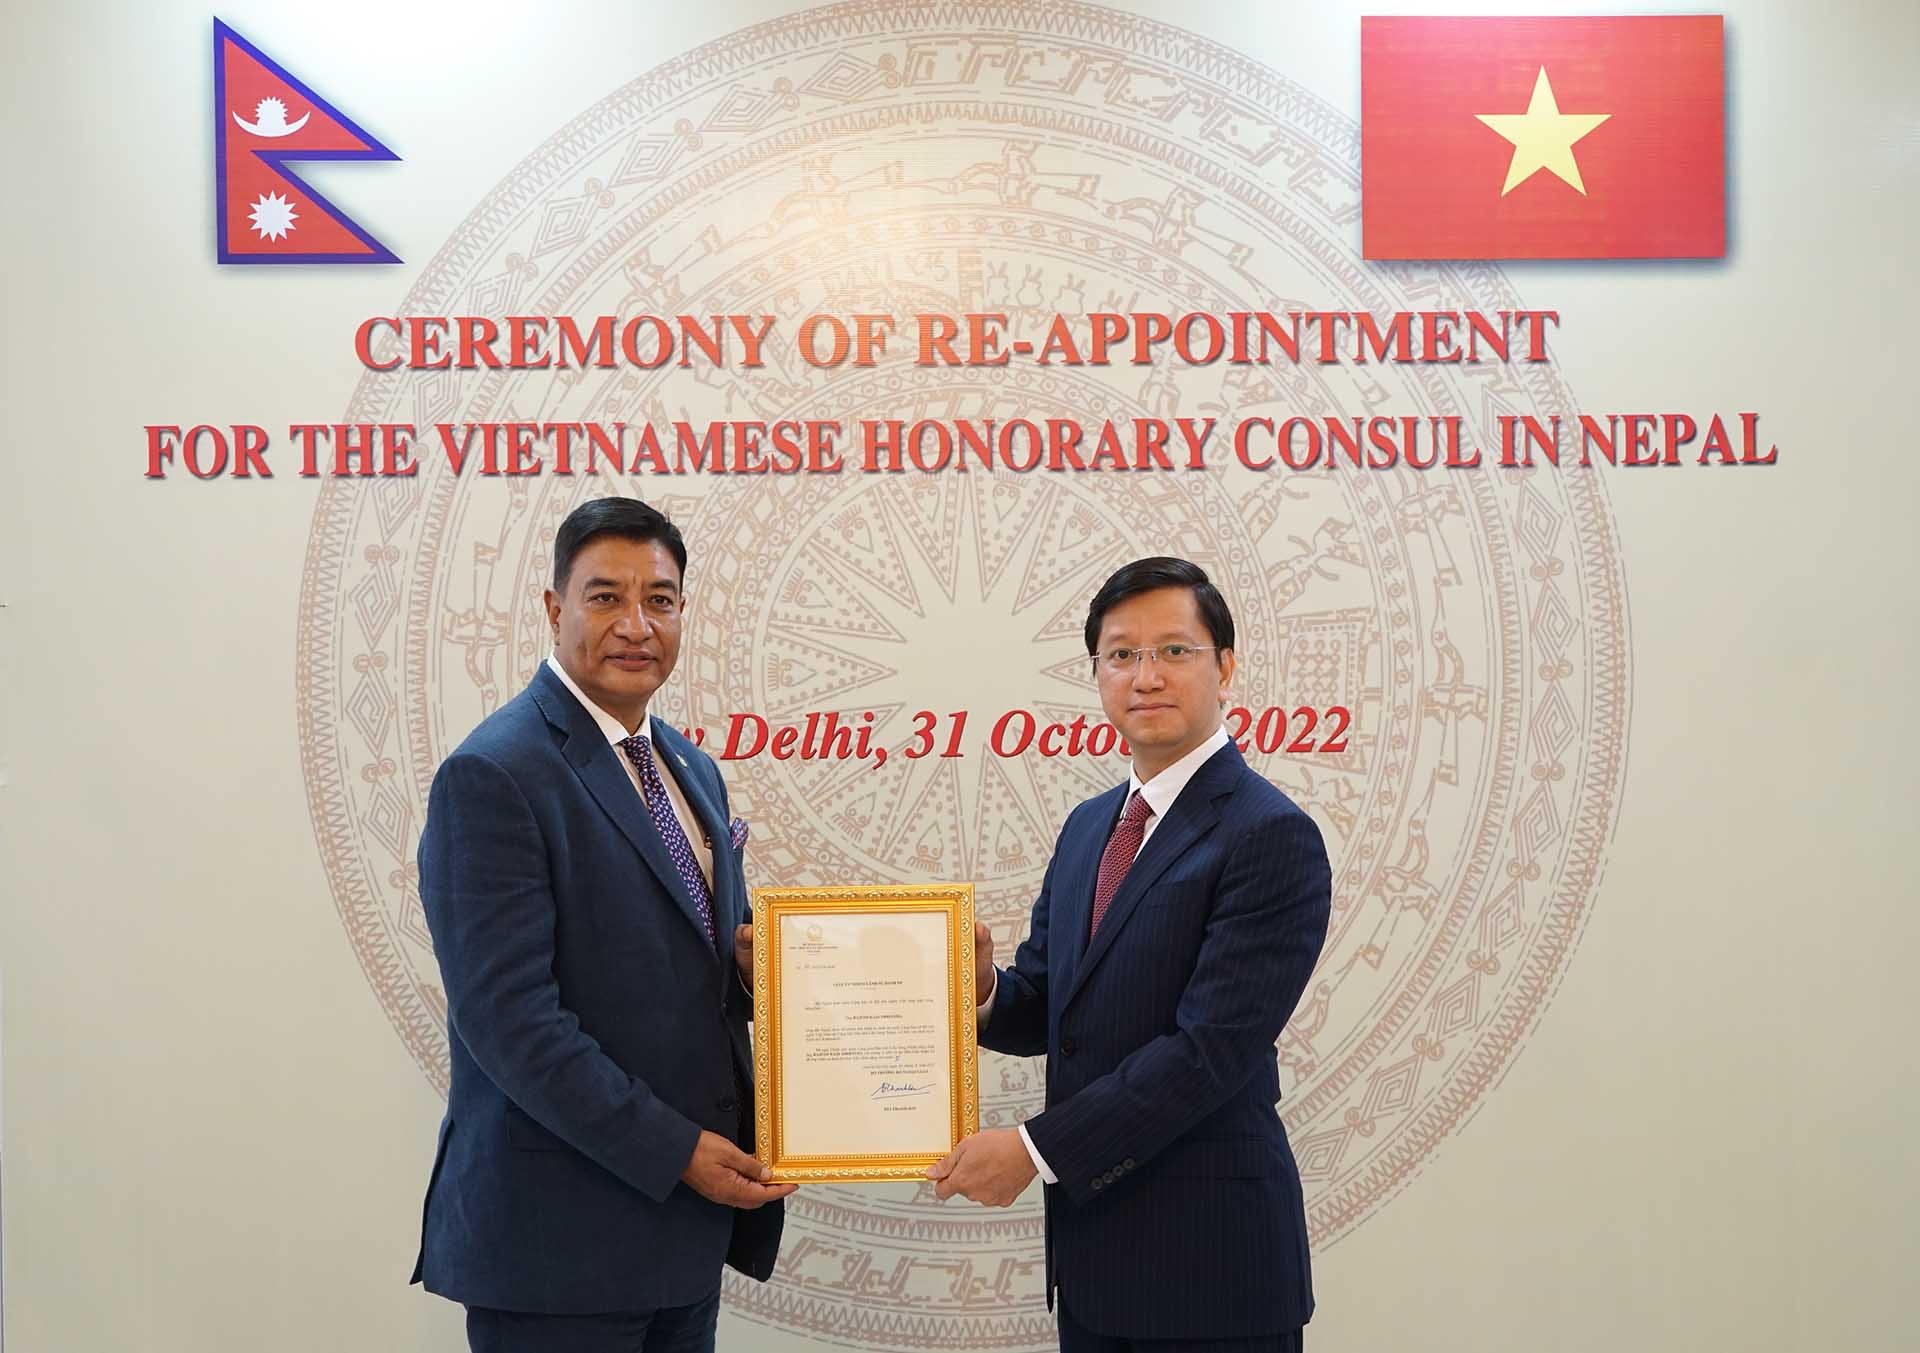 Đại sứ Nguyễn Thanh Hải trao quyết định bổ nhiệm Lãnh sự danh dự Việt Nam tại Nepal cho ông Rajesh Kazi Shrestha.